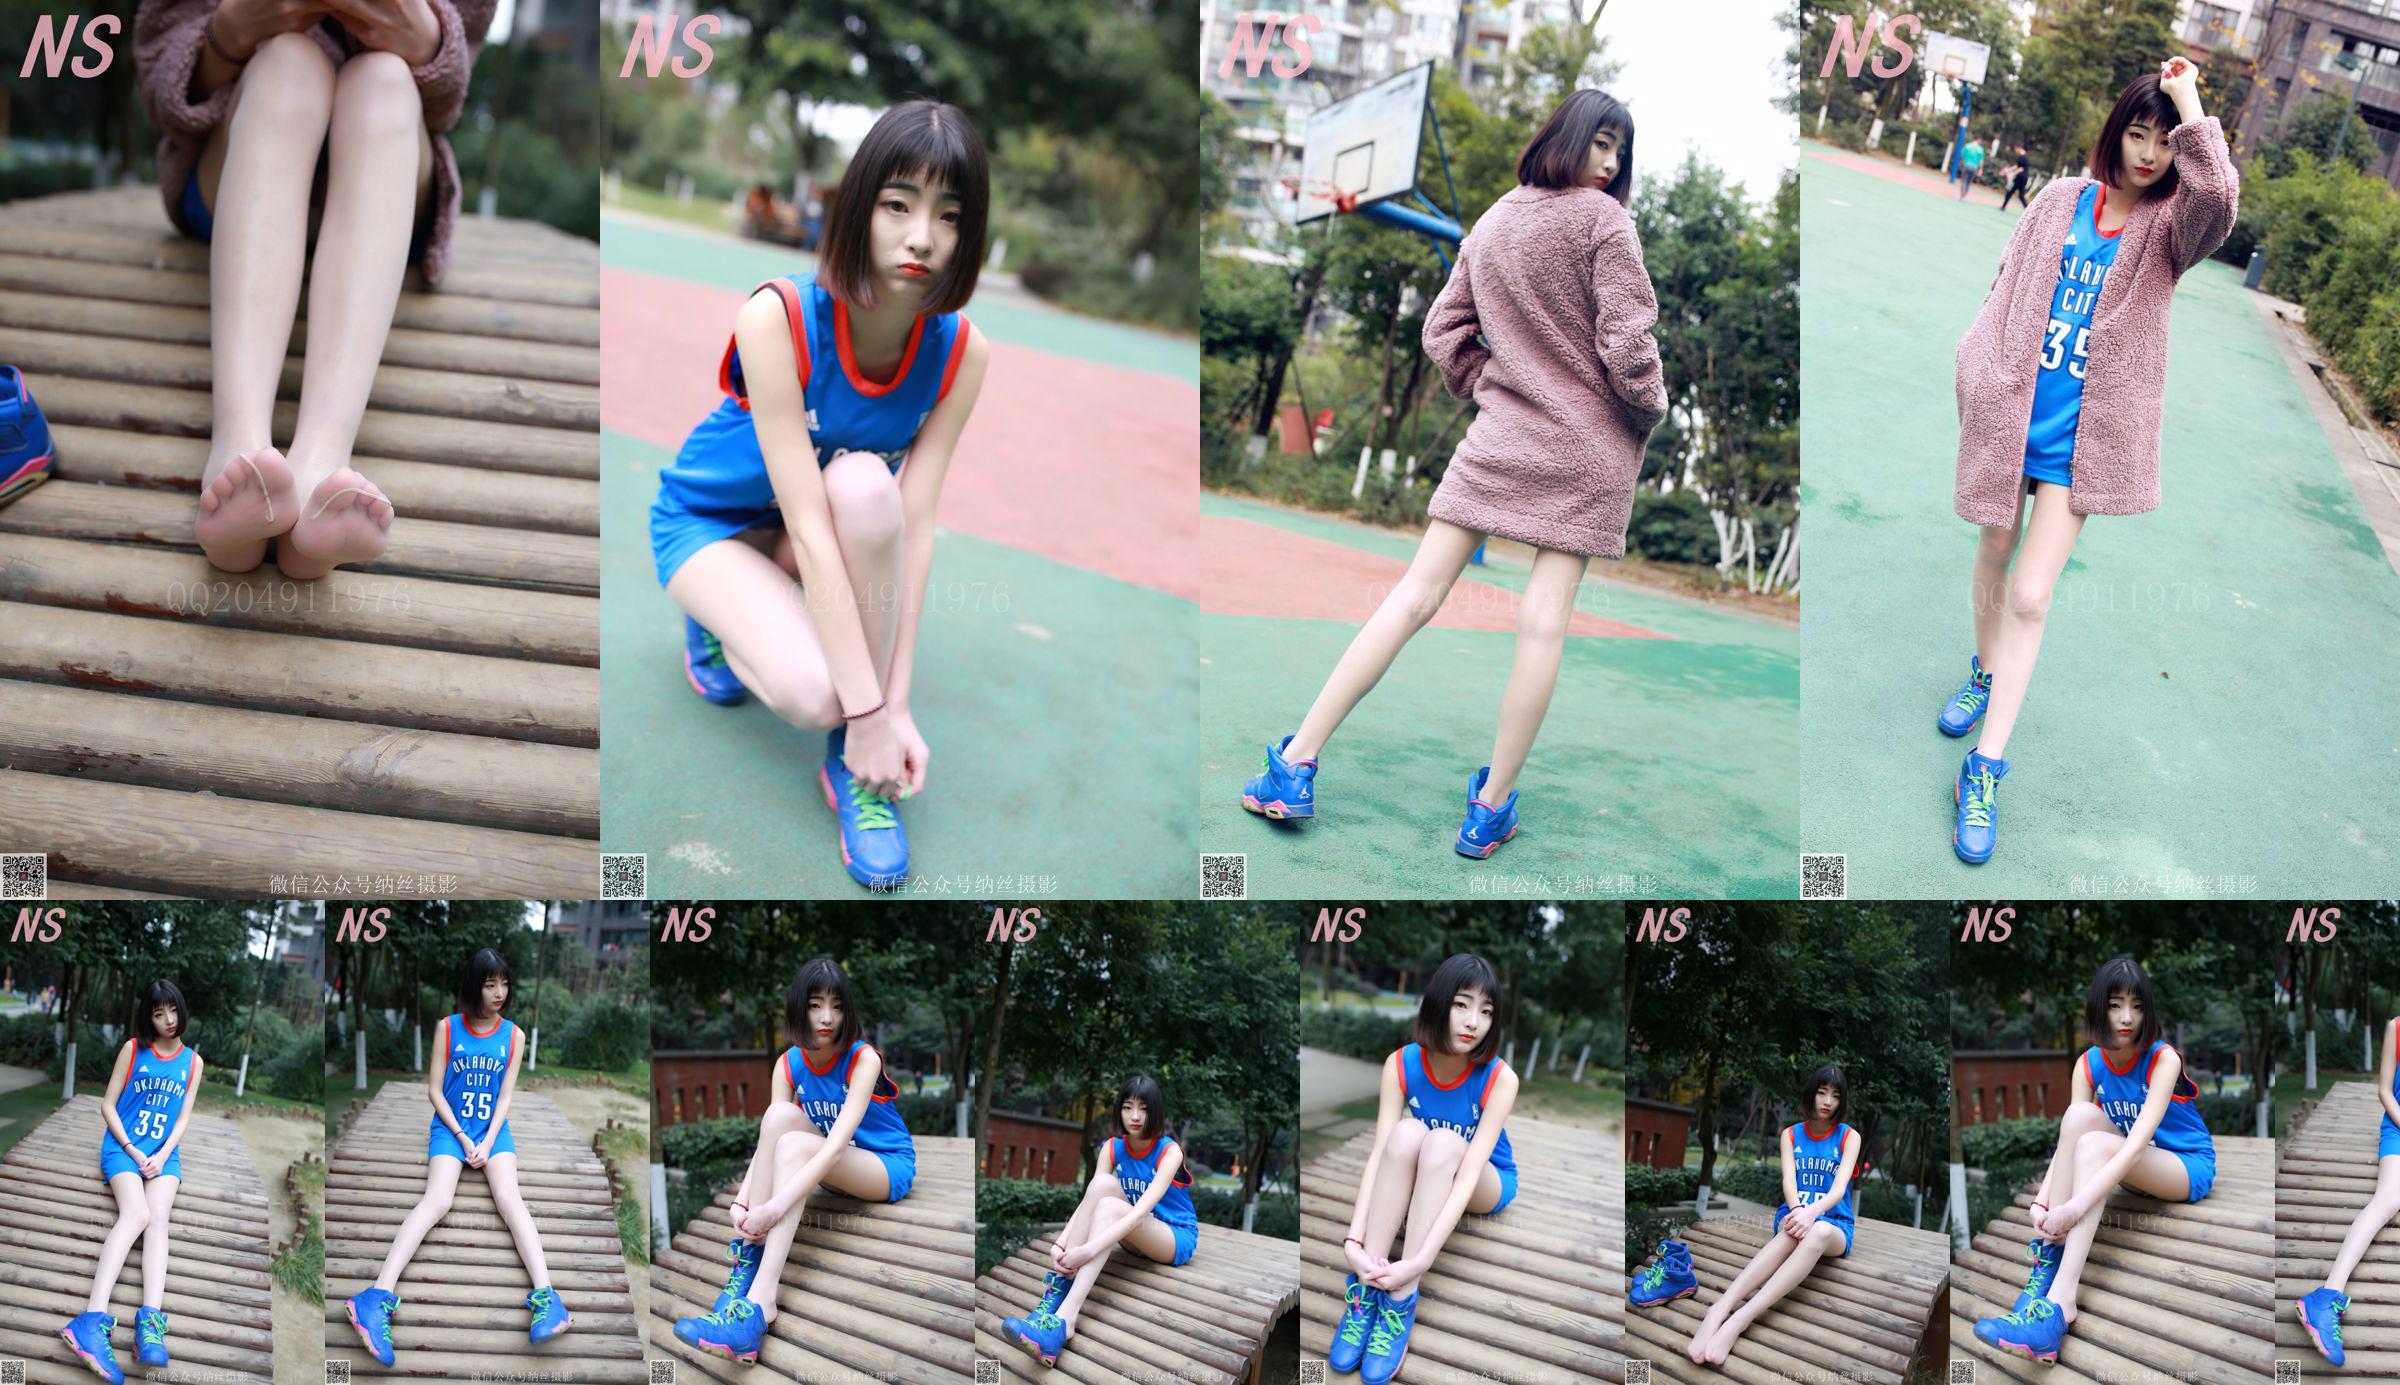 Chen Yujie "Gadis Bola Basket" [Nasi Photography] NO.107 No.fc8985 Halaman 1